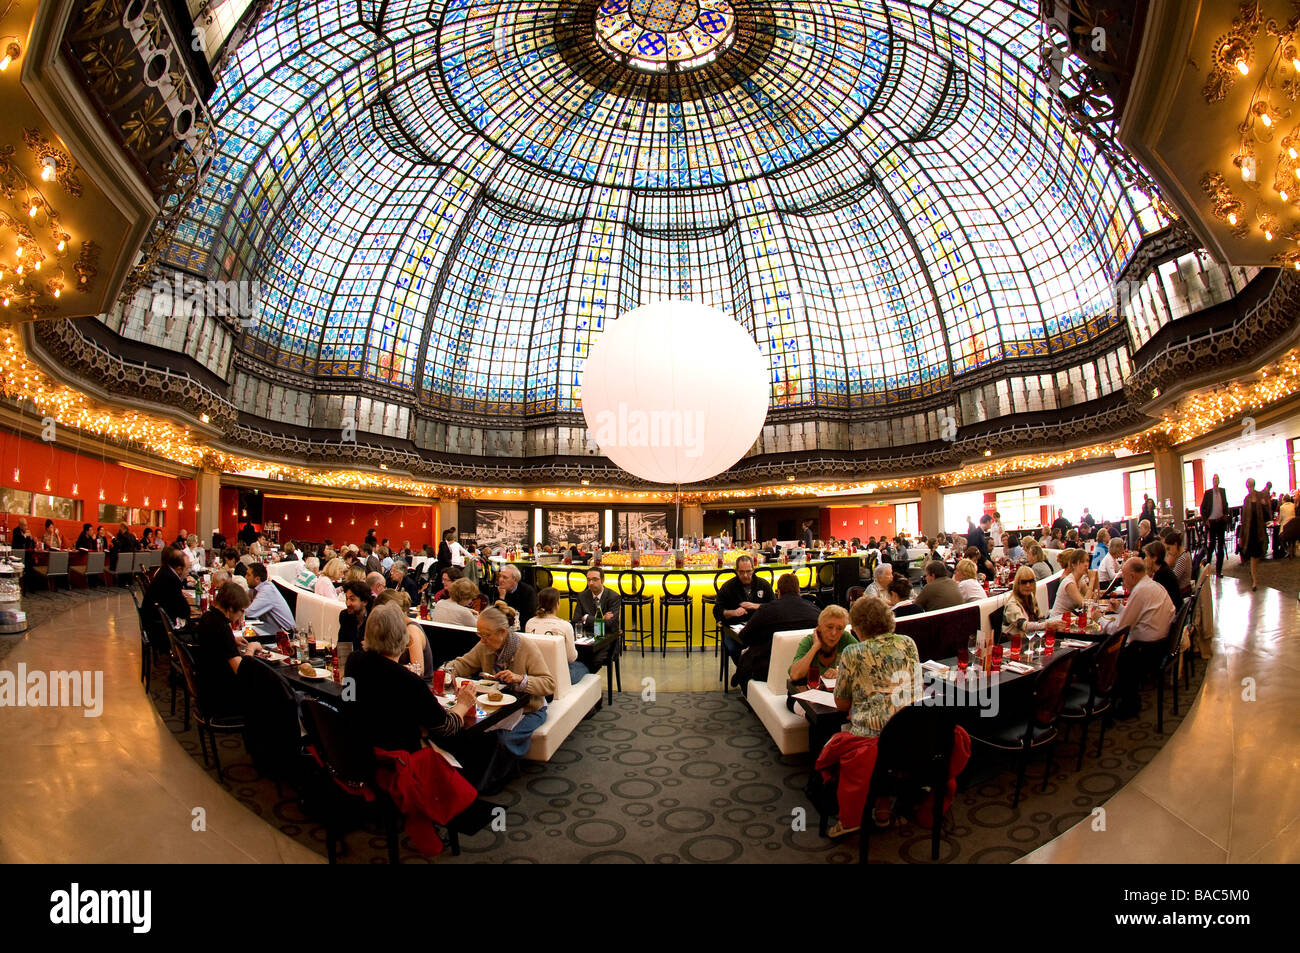 France, Paris, the restaurant of Le Printemps department store on Haussmann  boulevard Stock Photo - Alamy